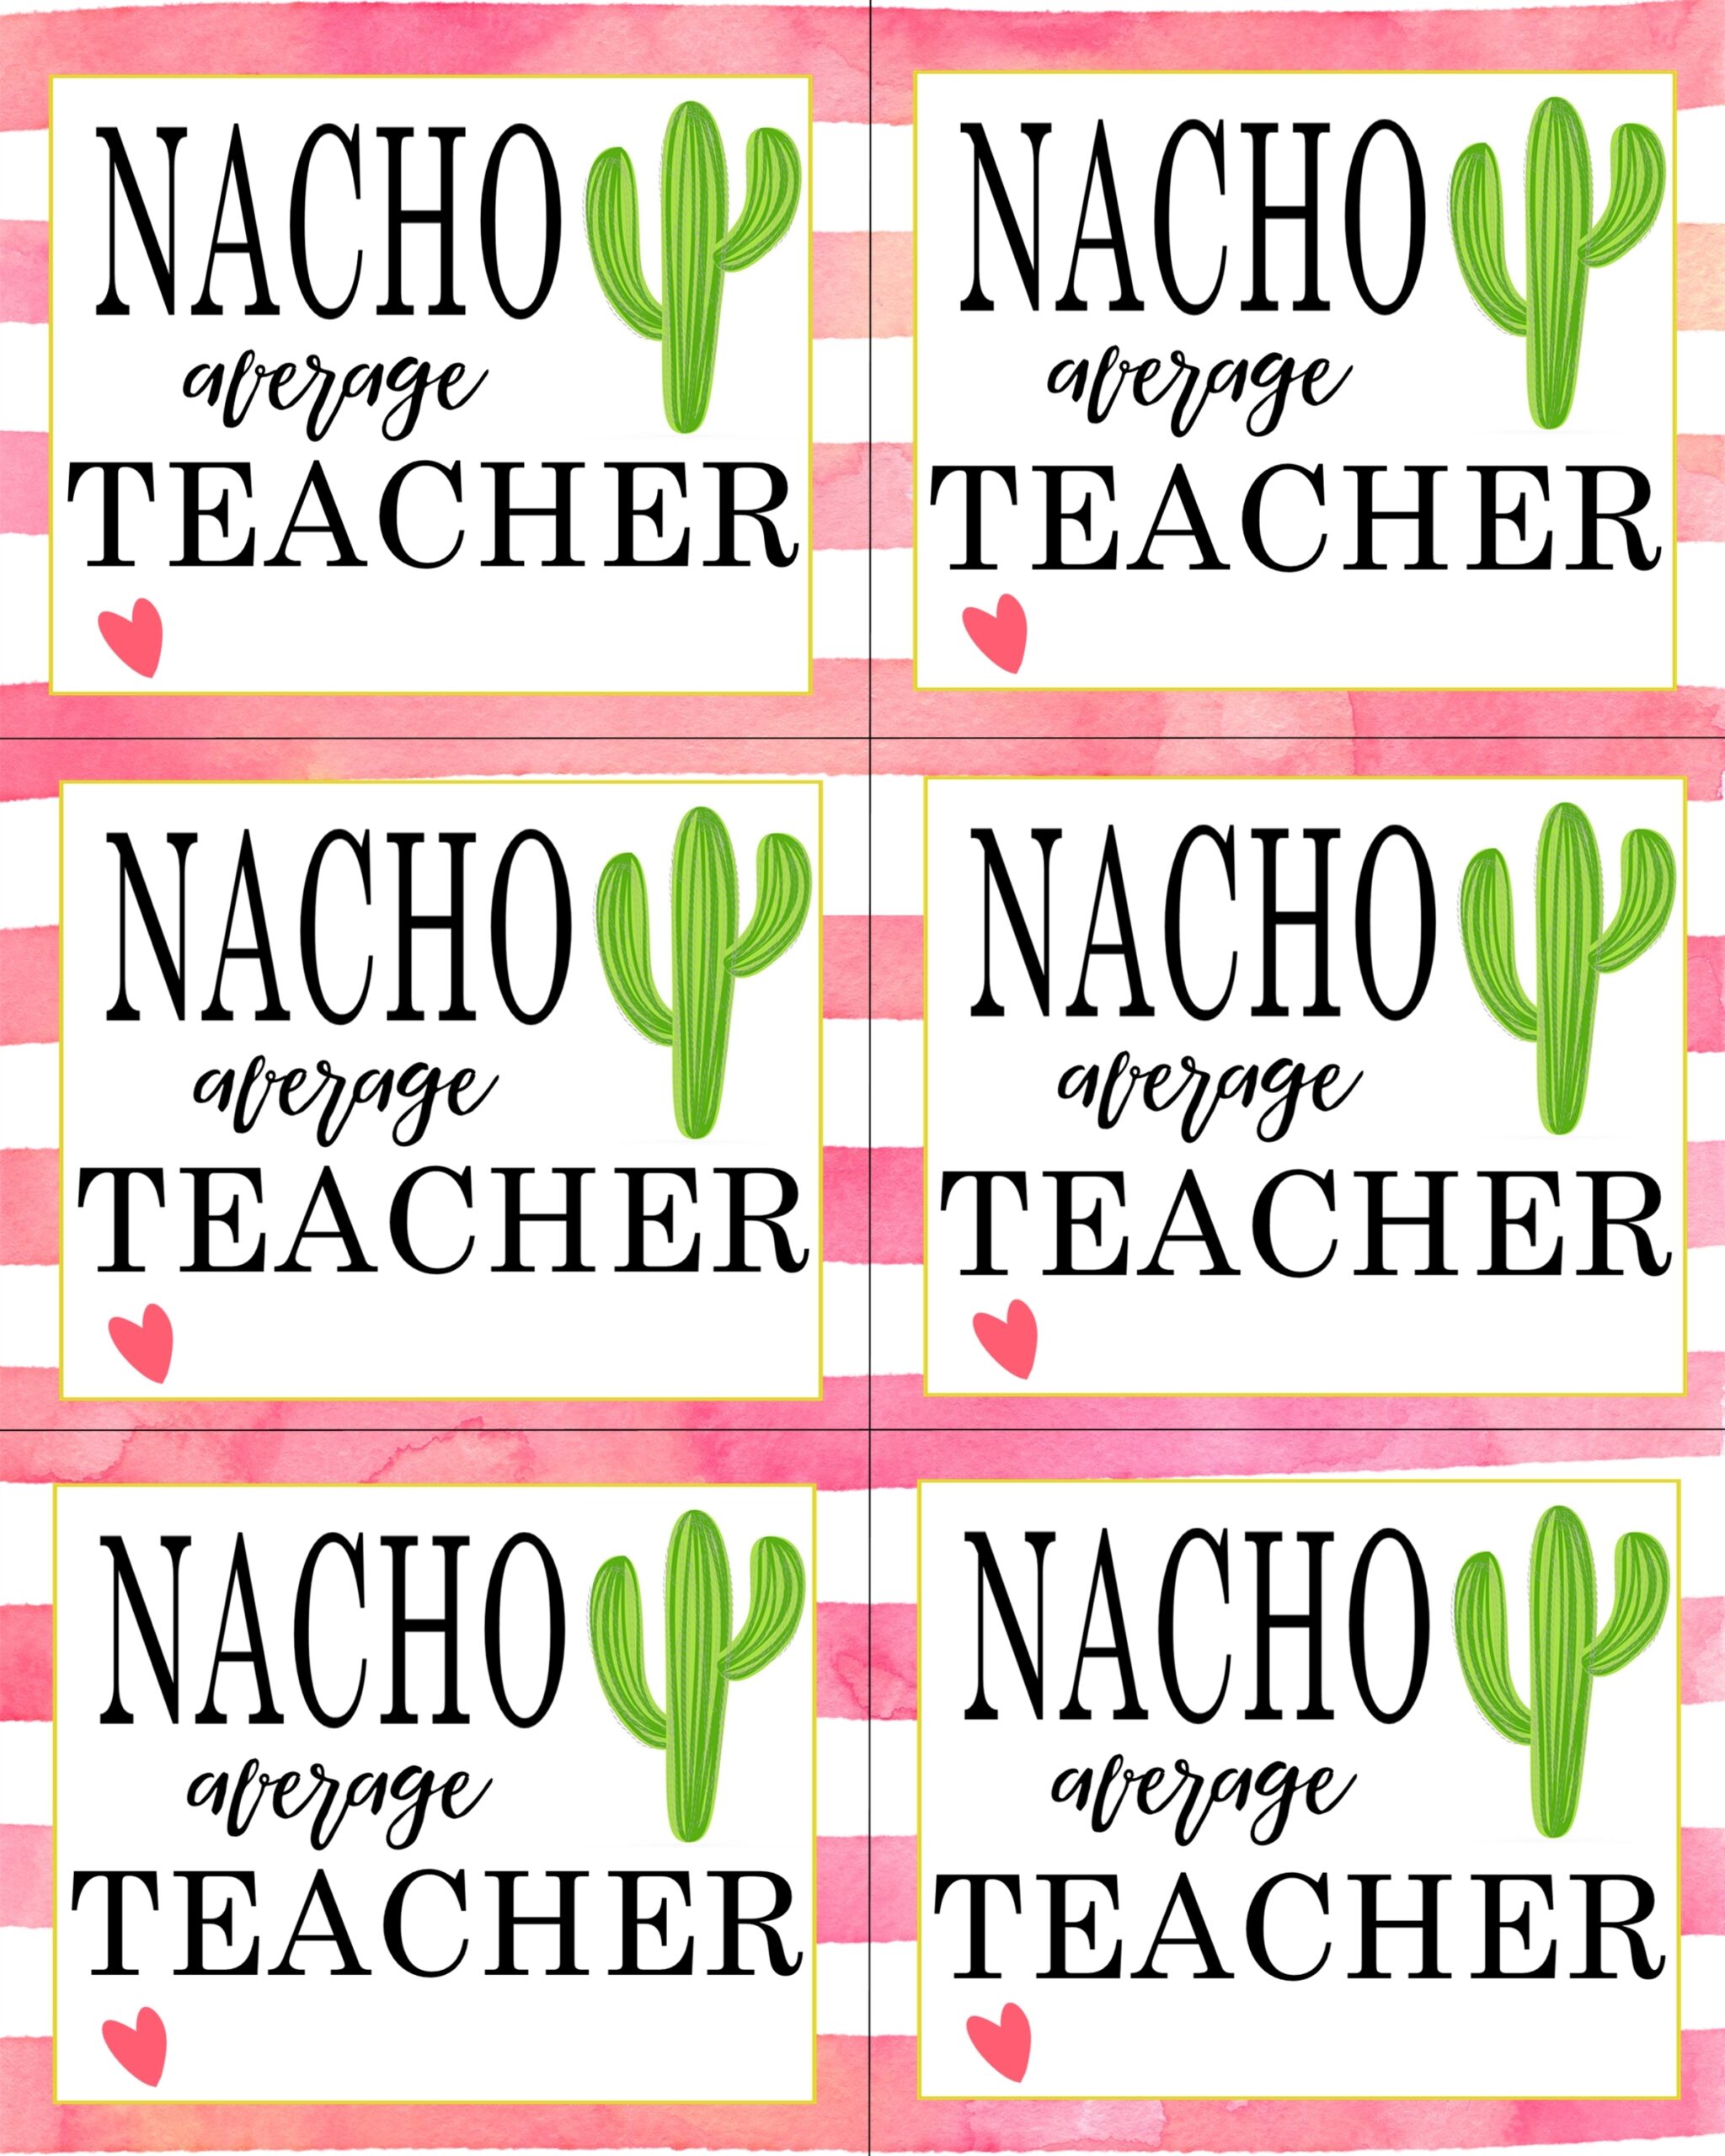 Nacho Average Teacher Printable Free